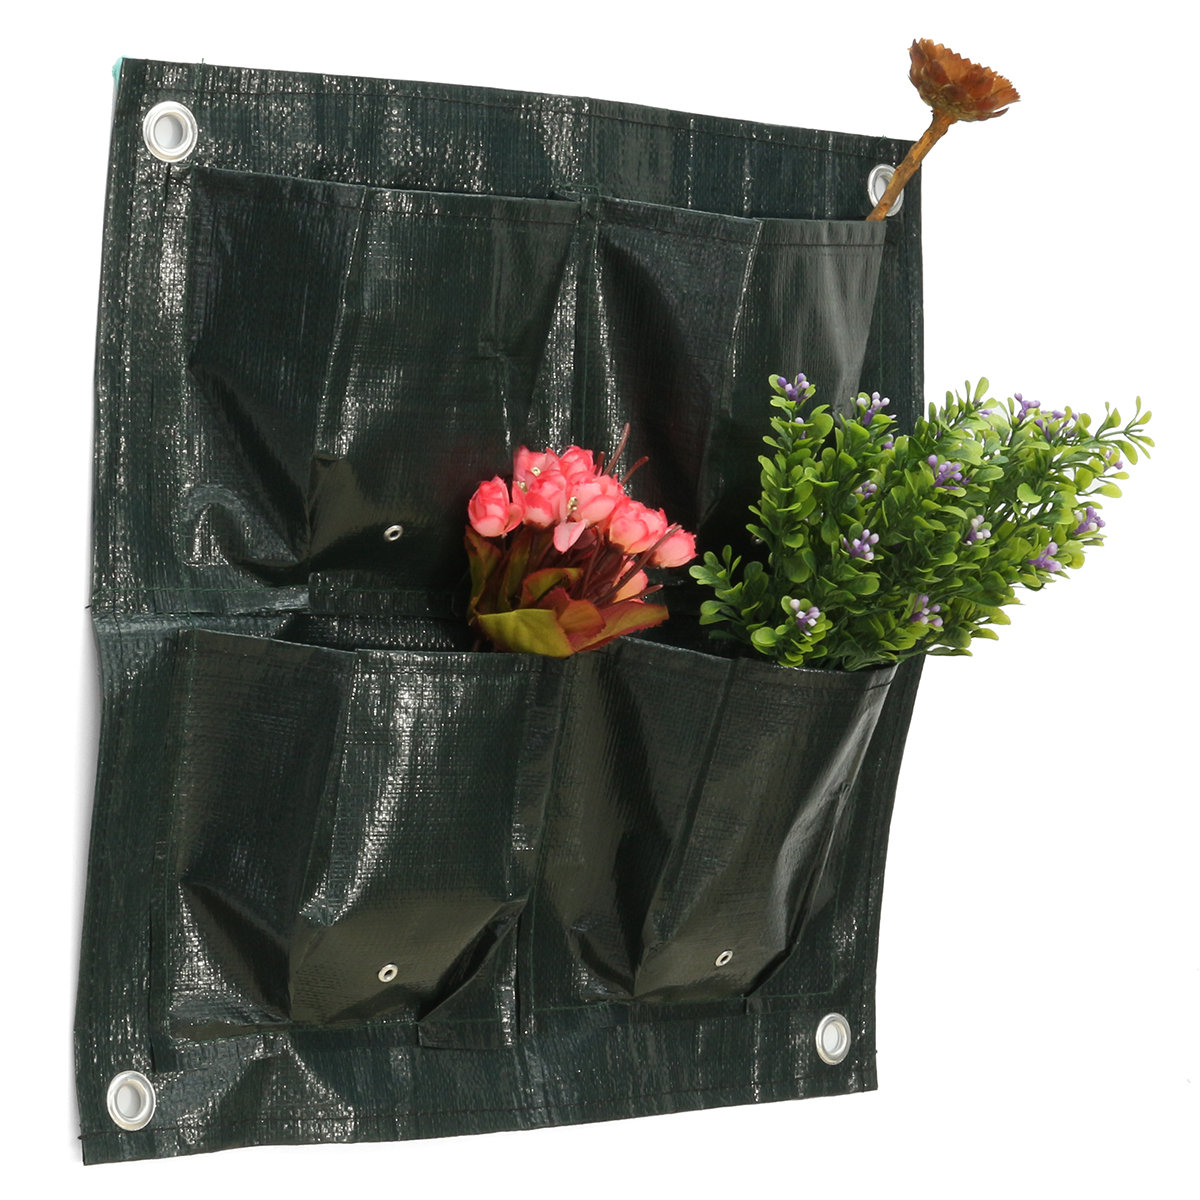 42x42cm 4 tasche fiori da giardino piante piantare borsa crescere borse pentola